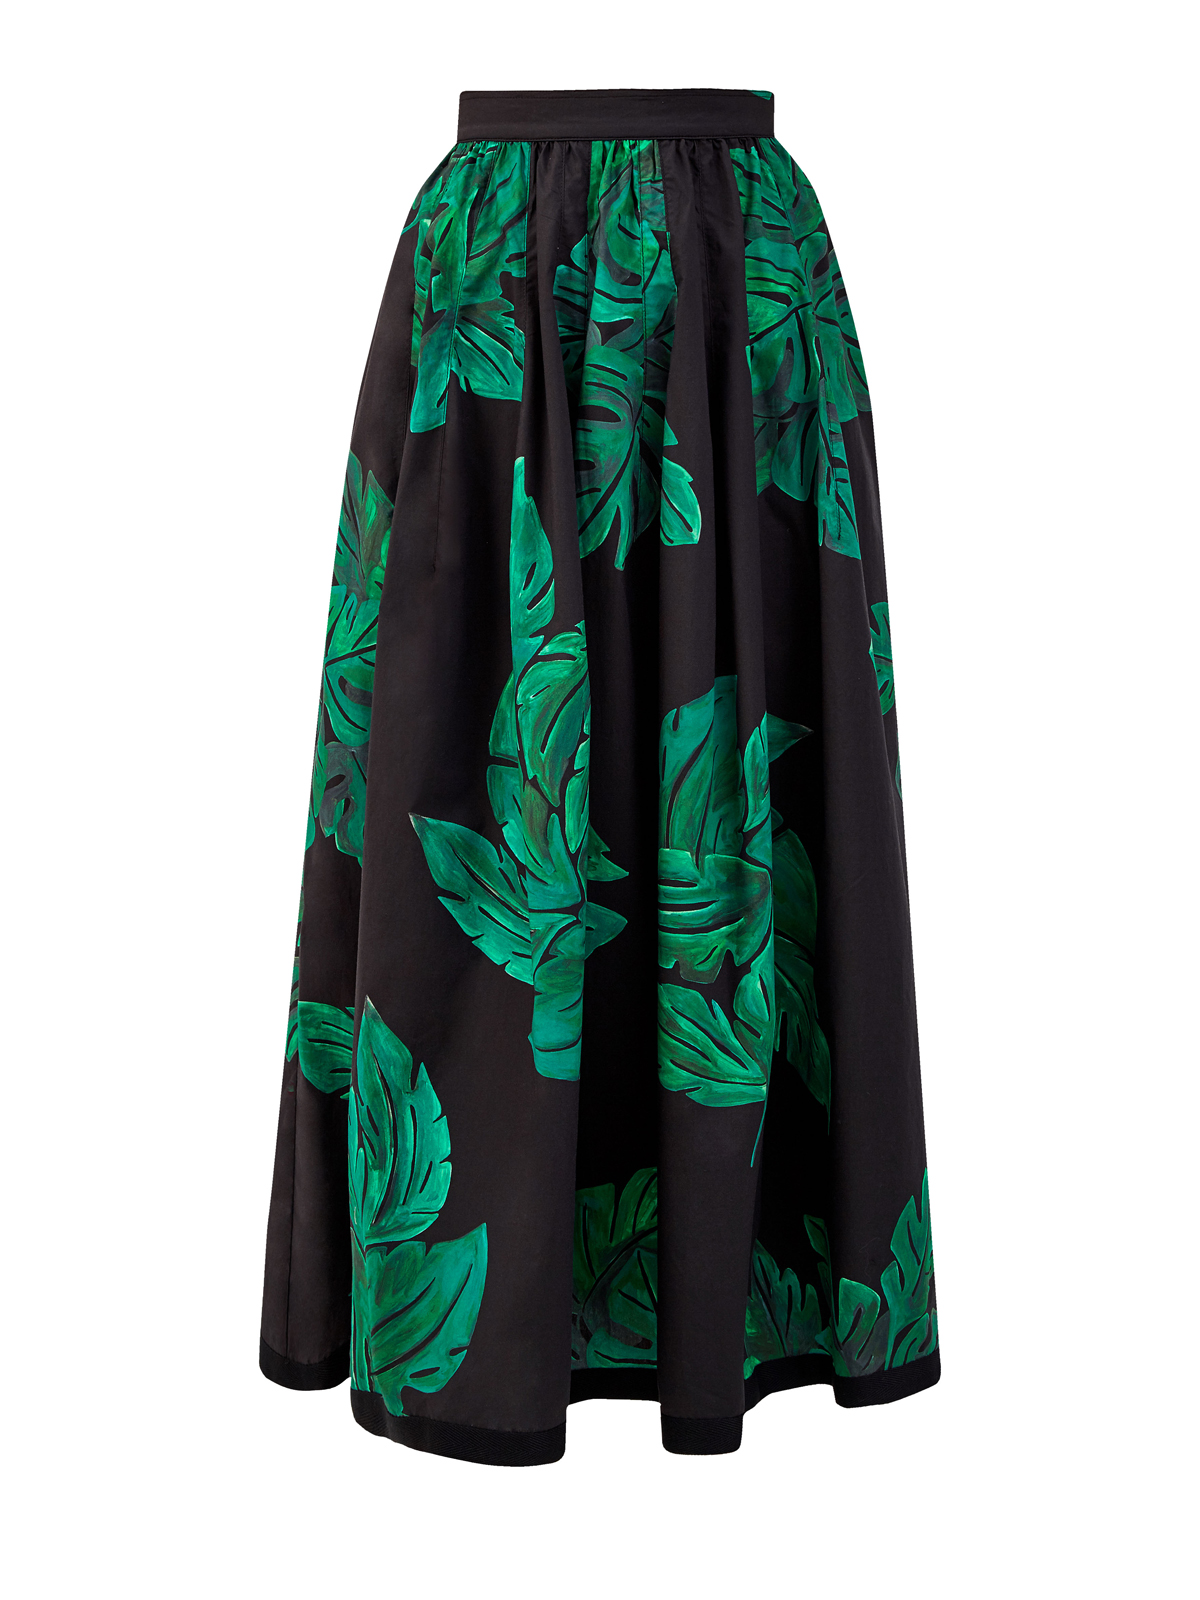 Объемная юбка из хлопка с флористическим принтом GENTRYPORTOFINO, цвет черный, размер 42 - фото 1